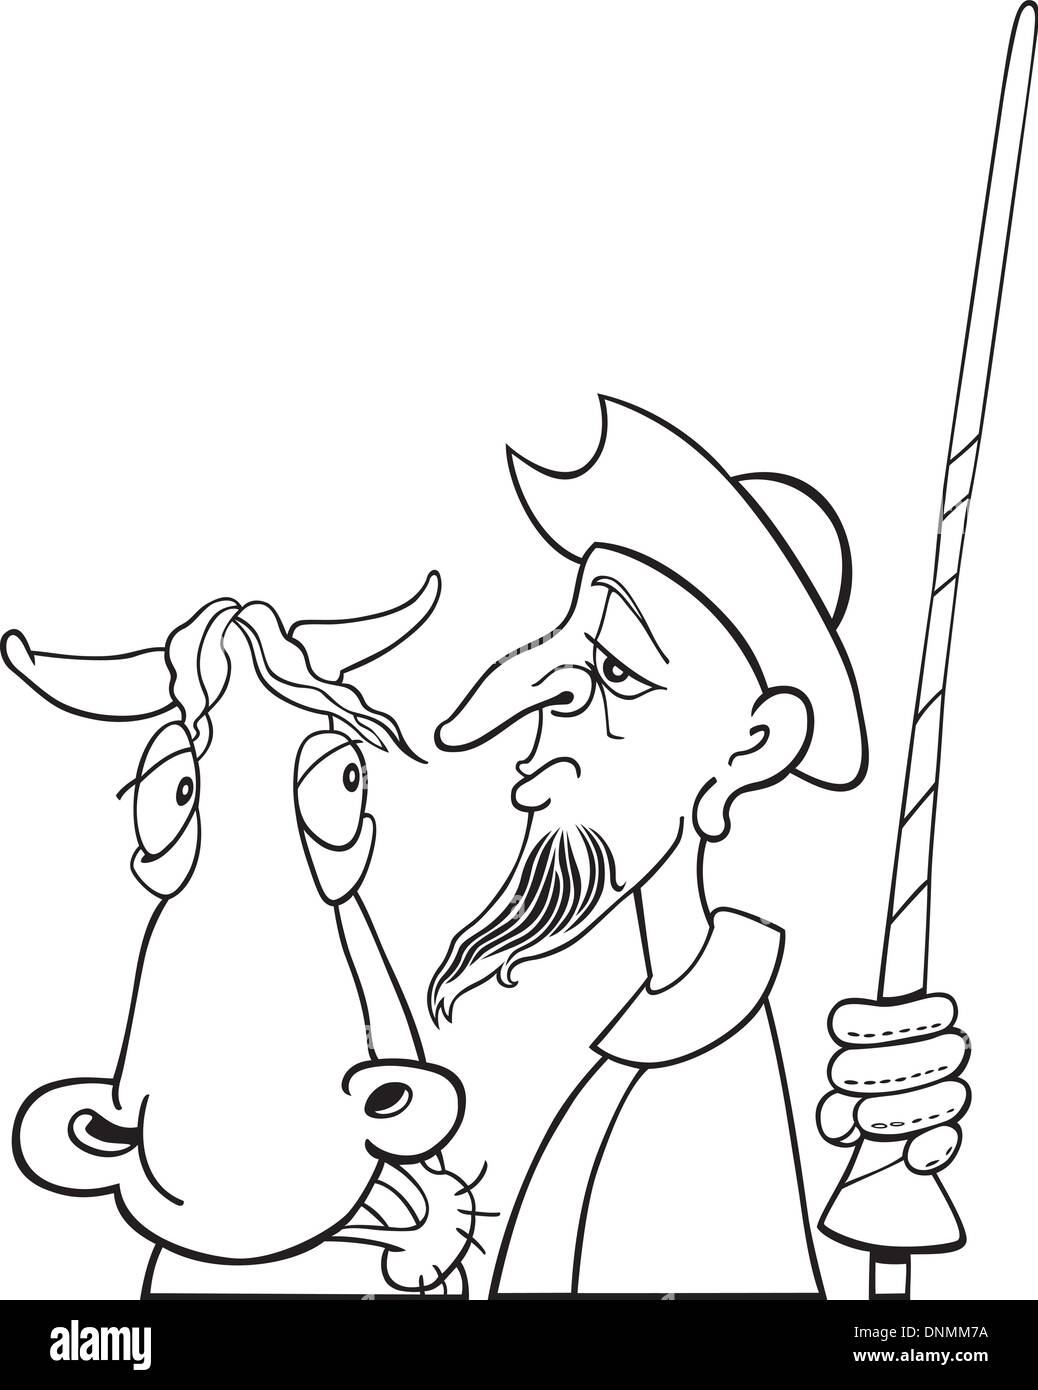 Illustration de Don Quichotte et son cheval pour Coloring Book Illustration de Vecteur